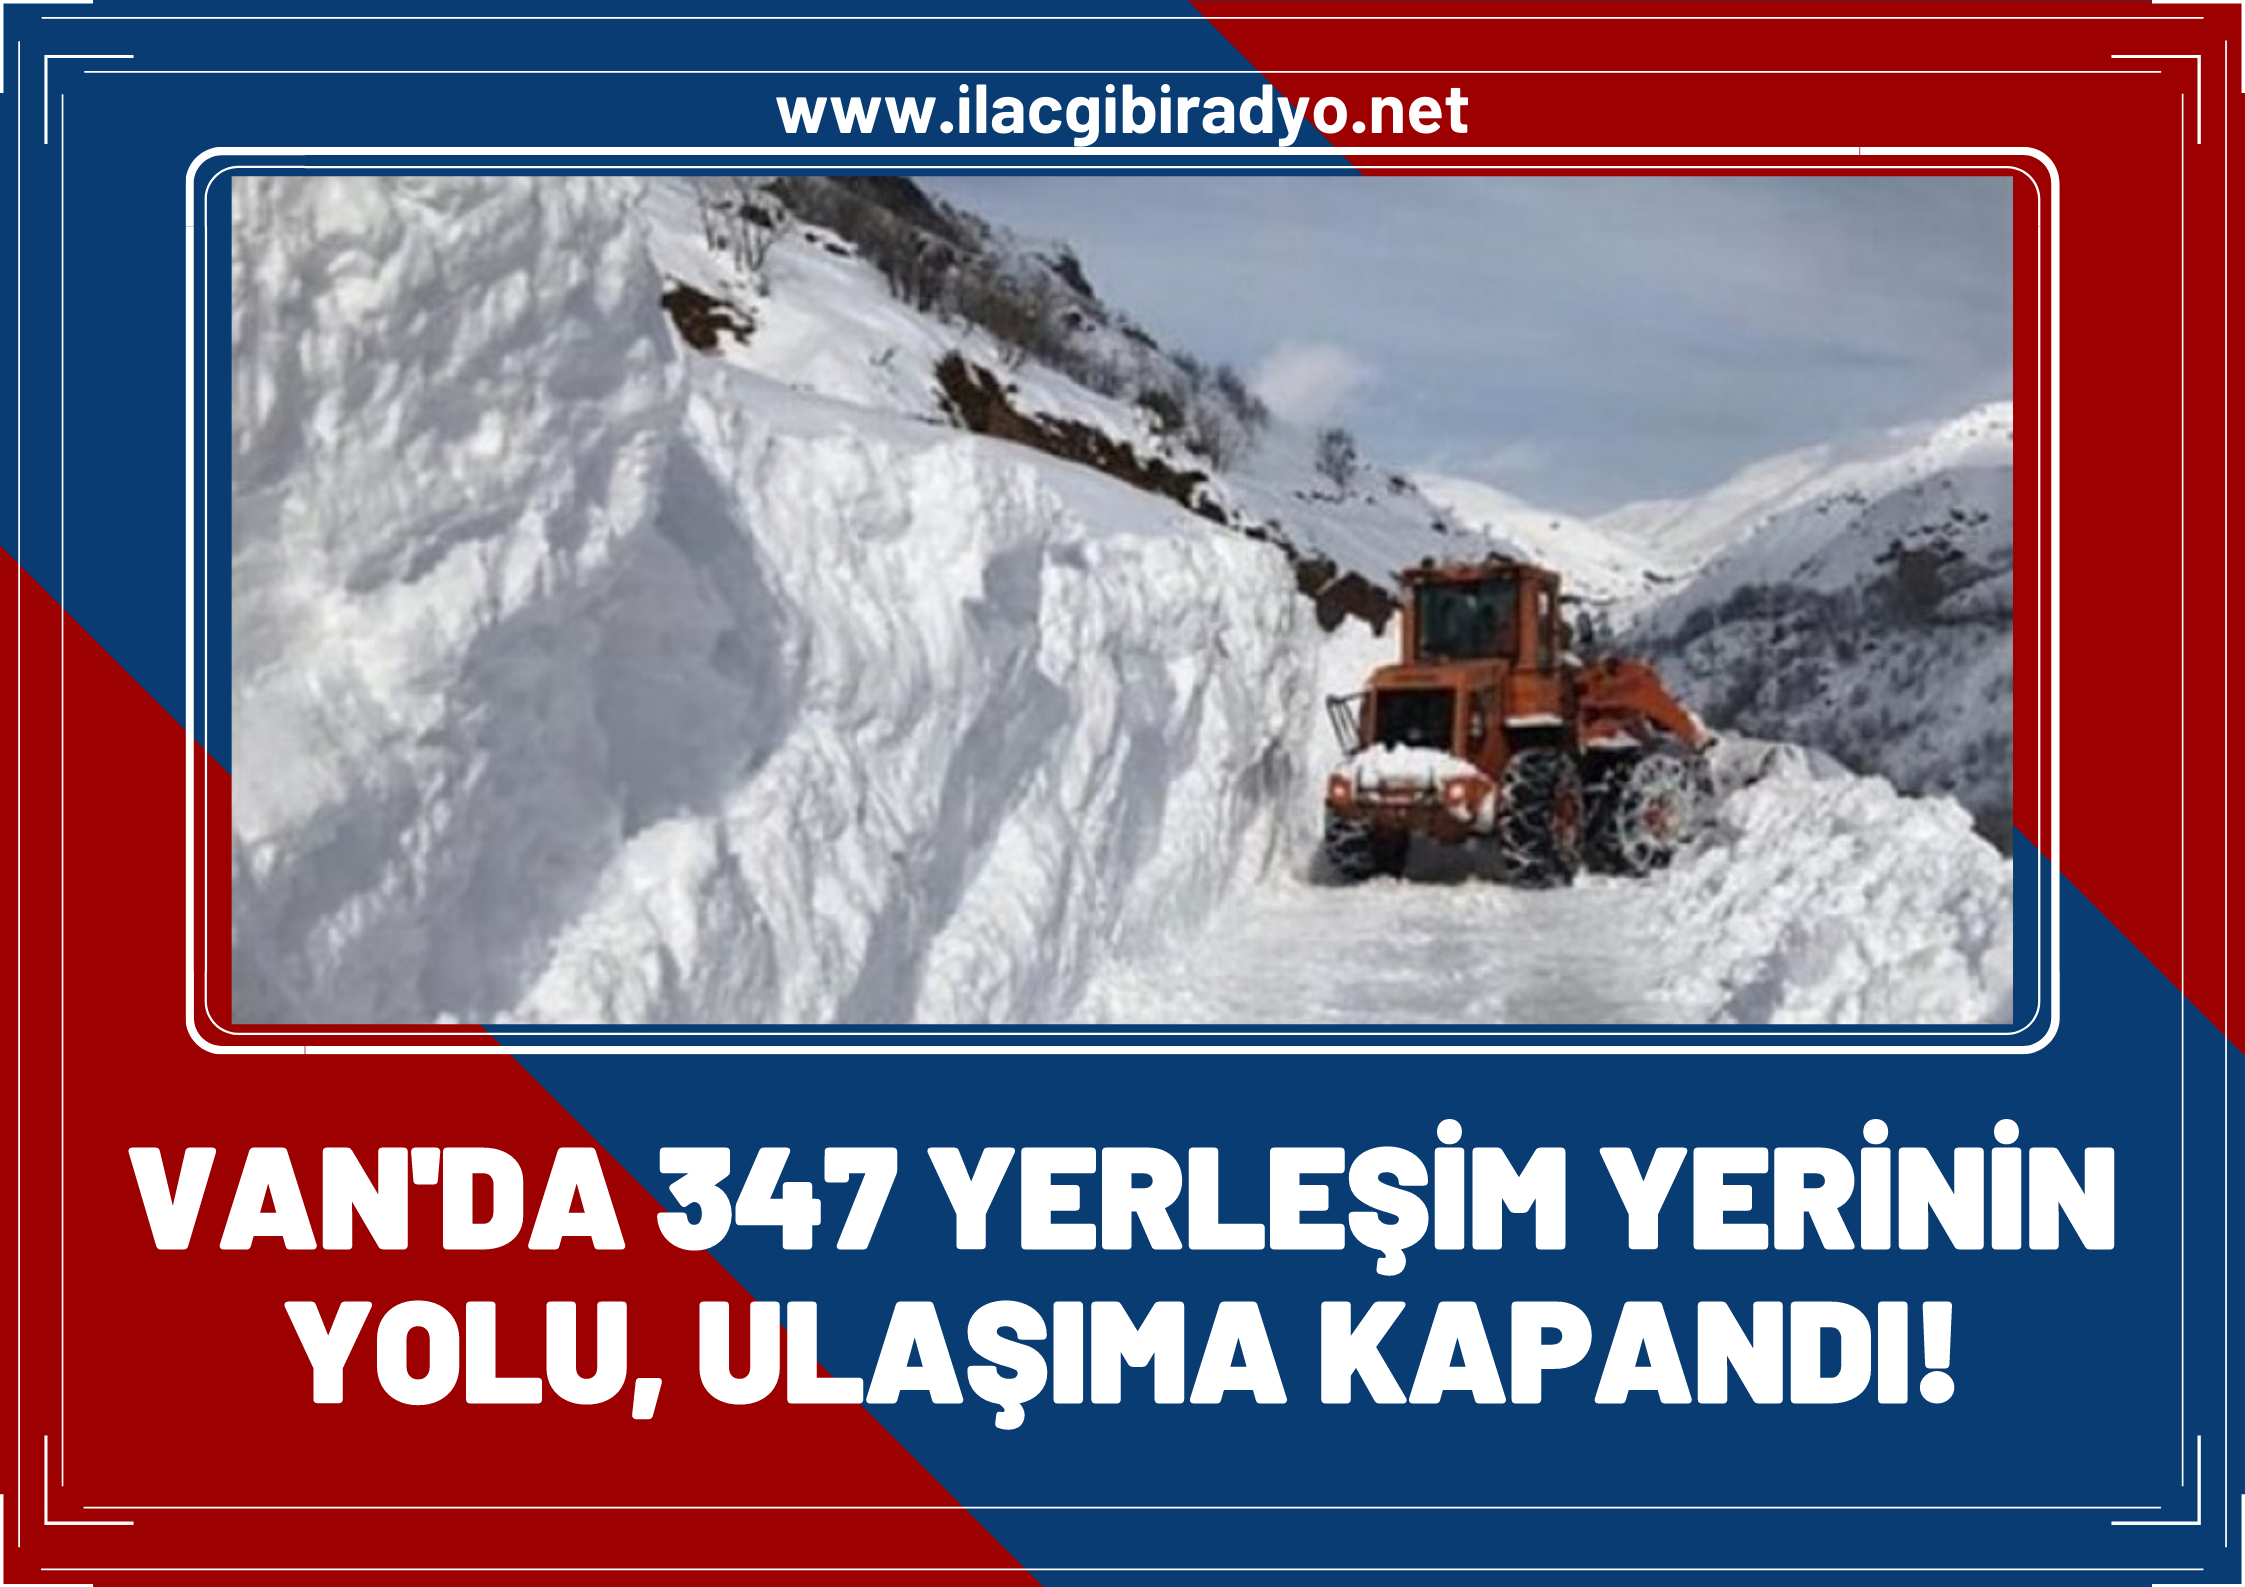 Van'da ulaşıma kar engeli: 347 yerleşim yerinin yolu ulaşıma kapandı!